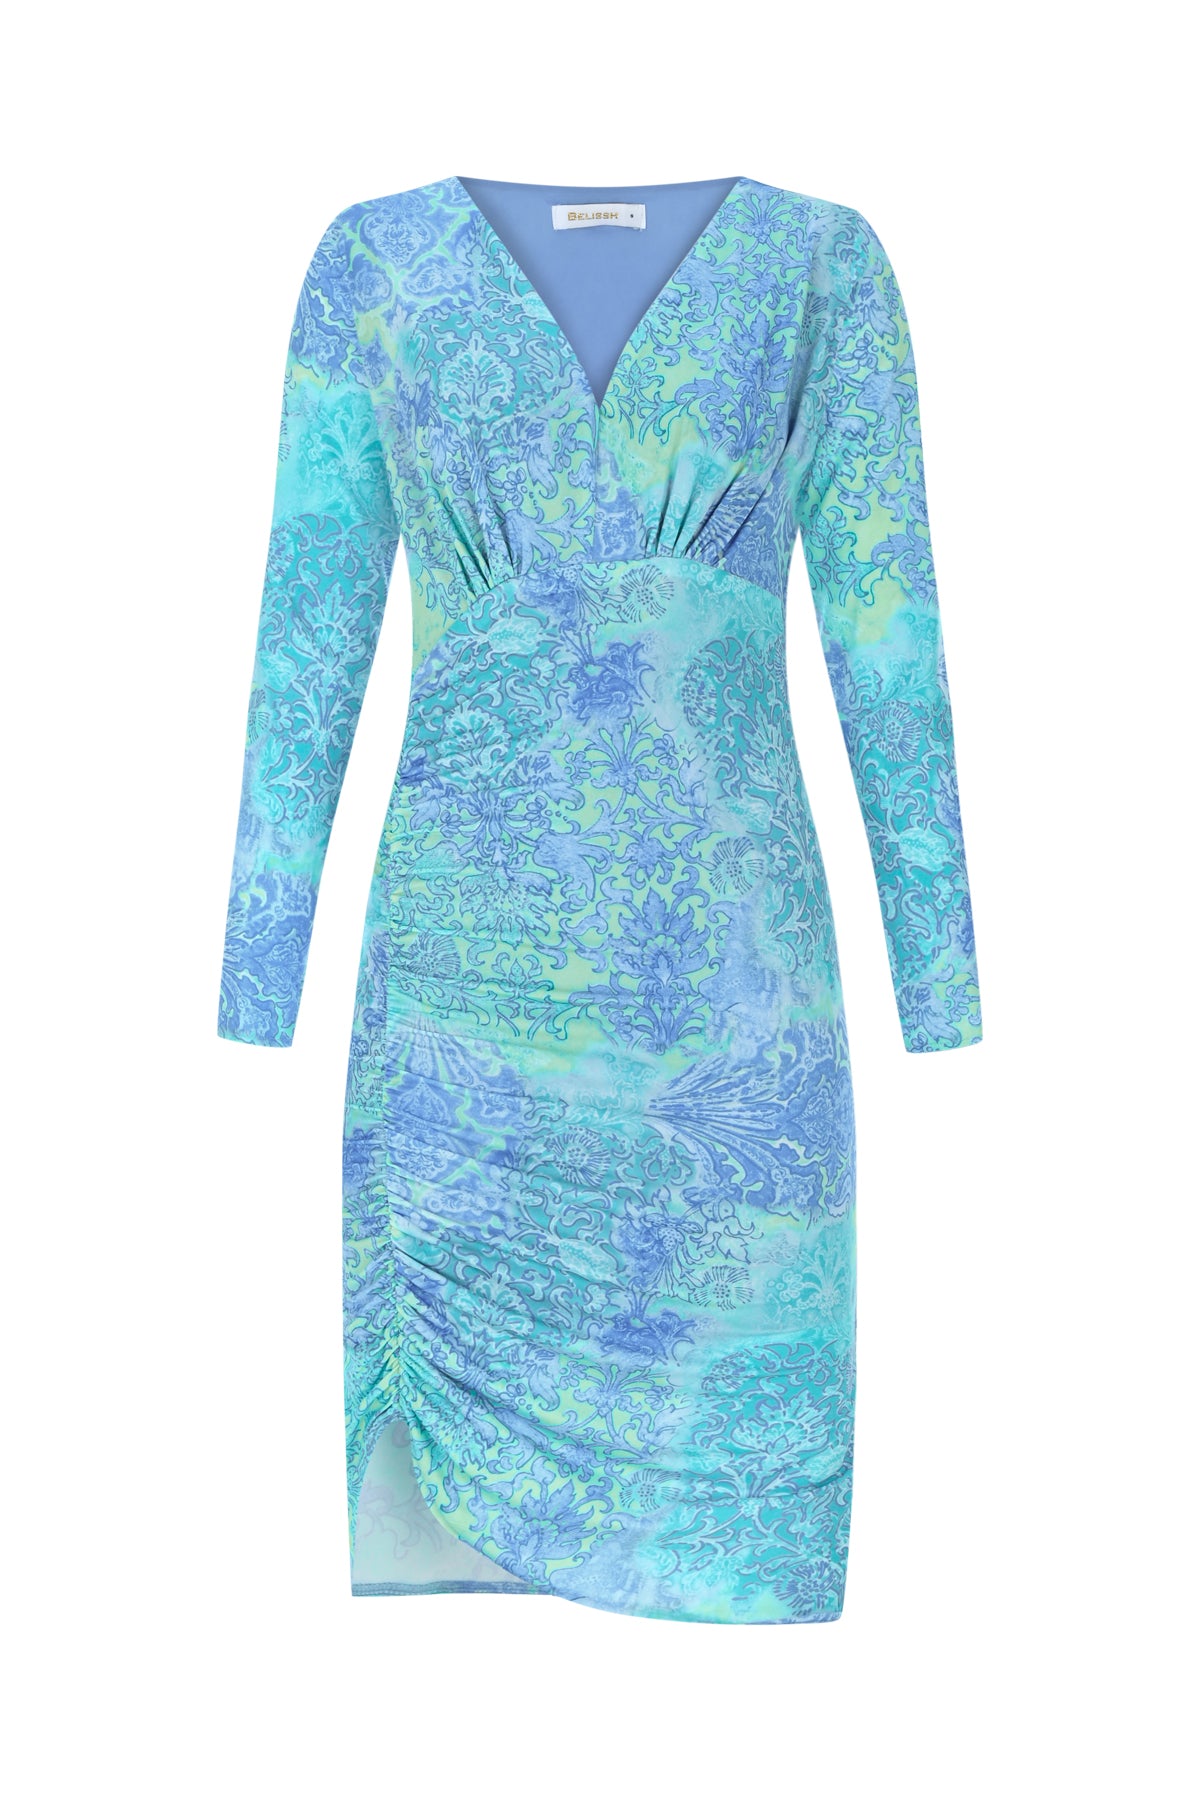 Bedrucktes drapiertes Kleid mit asymmetrischem Saum und V-Ausschnitt – Blau